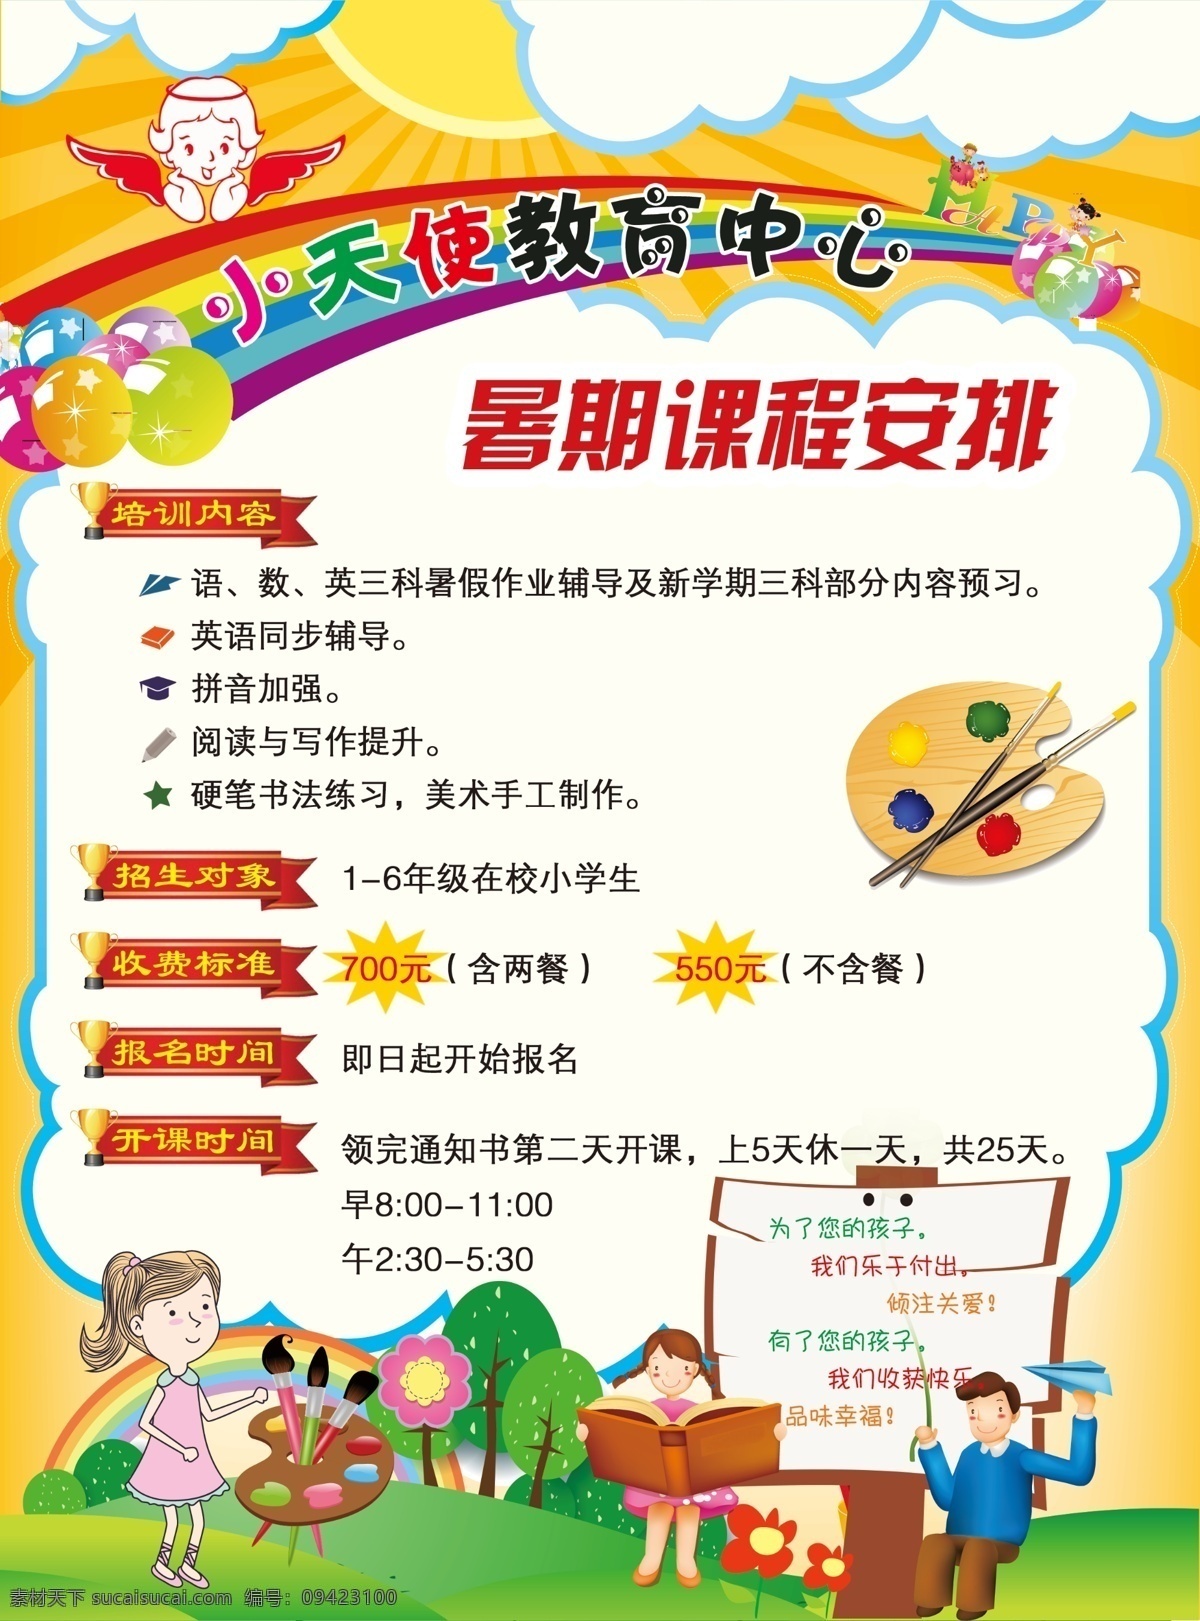 教育中心 暑假 招生 暑假招生 彩虹 云彩 儿童 快乐 画版